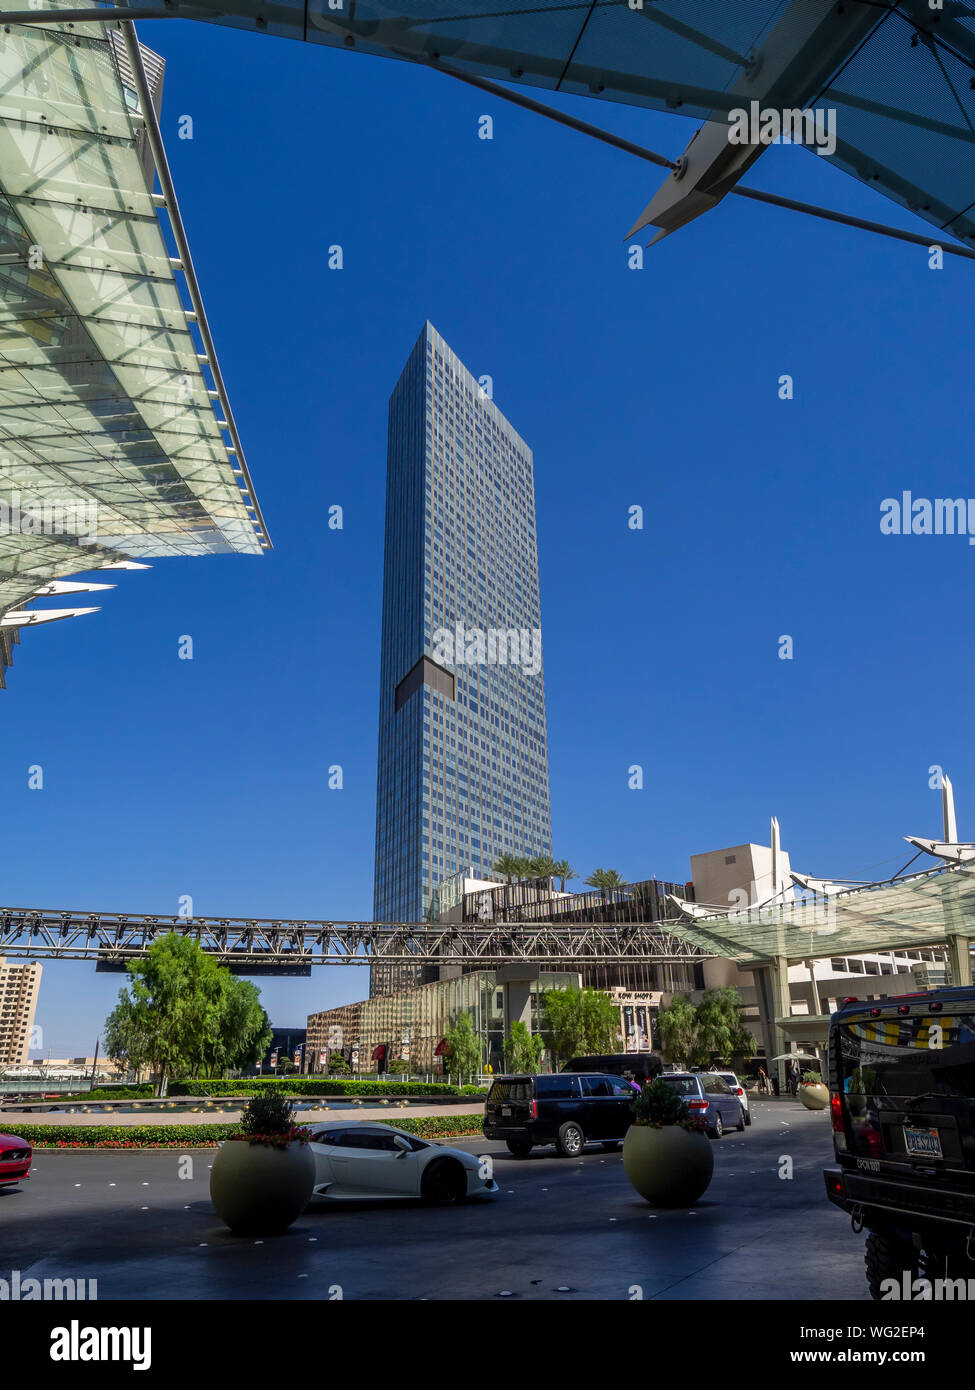 Le Mandarin Oriental Resort and Casino à Las Vegas. Le Mandarin Oriental Resort est un nouveau complexe hôtelier 5 étoiles, situé dans la zone de centre-ville. Banque D'Images